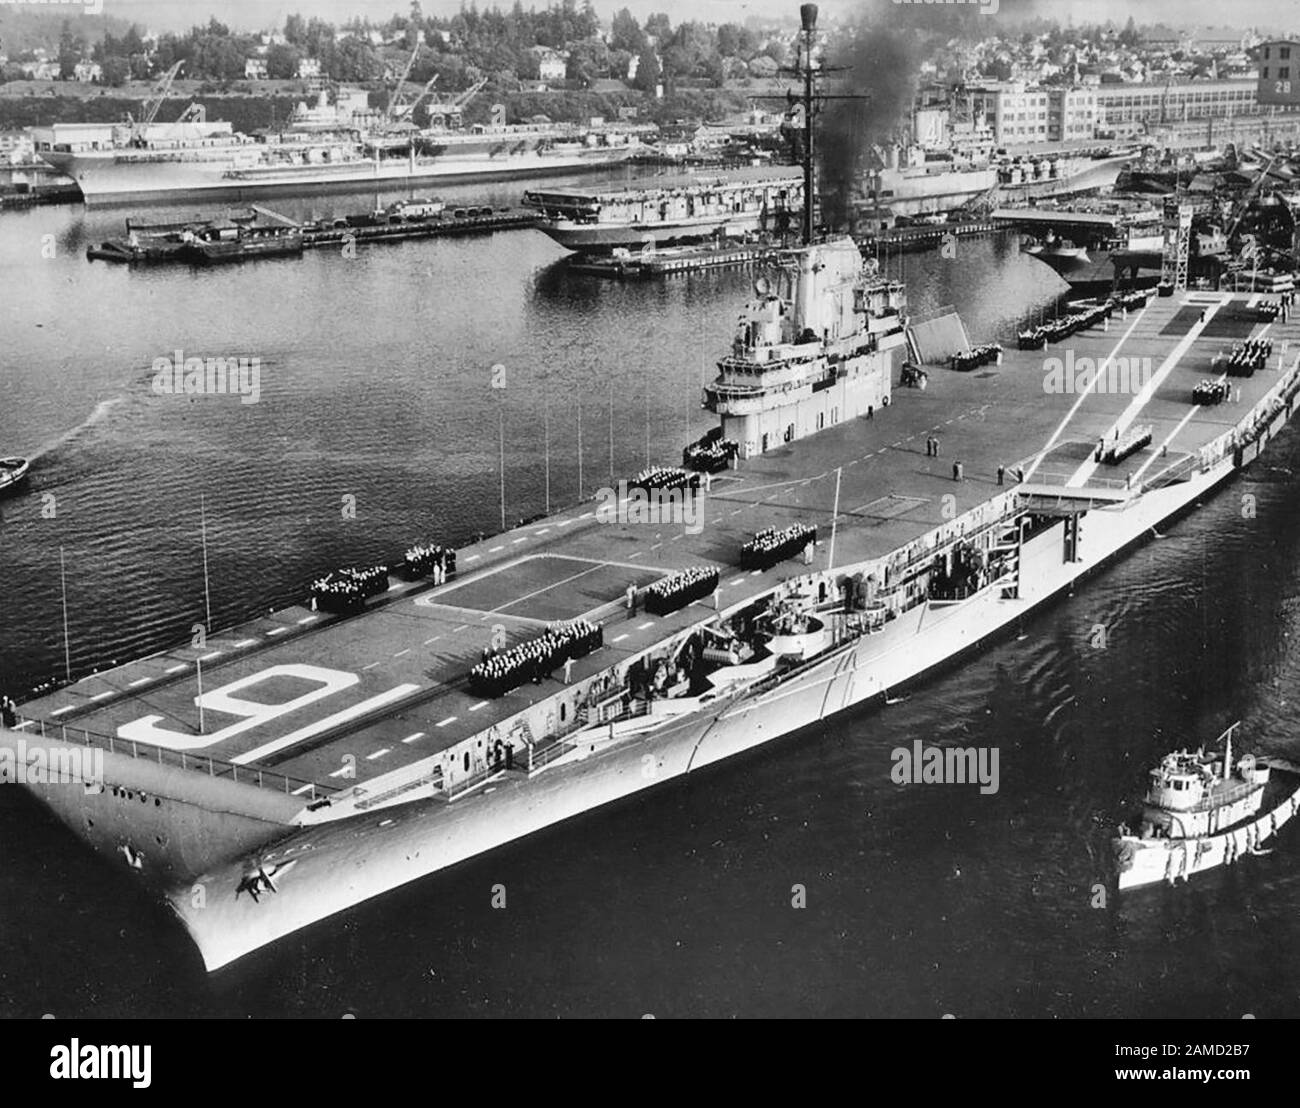 La portaerei della marina statunitense USS Lexington (CVA-16) esce dal cantiere navale Puget Sound Naval Shipyard, Washington (USA), circa nel settembre 1955, per le sue prime prove in mare dopo le conversioni SCB-27C e -125. La USS Franklin D. Roosevelt (CVA-42), sullo sfondo, è ben in fatto di modernizzazione della sua SCB-110. La USS Midway (CVA-41), a metà distanza, si trova nelle fasi iniziali della sua SCB-110 (o in fase di preparazione). Un altro vettore della classe Essex è visibile sulla destra, o USS Essex (CVA-9) o USS Yorktown (CVA-10) durante le loro conversioni SCB-125. Circa Settembre 1955 Foto Stock